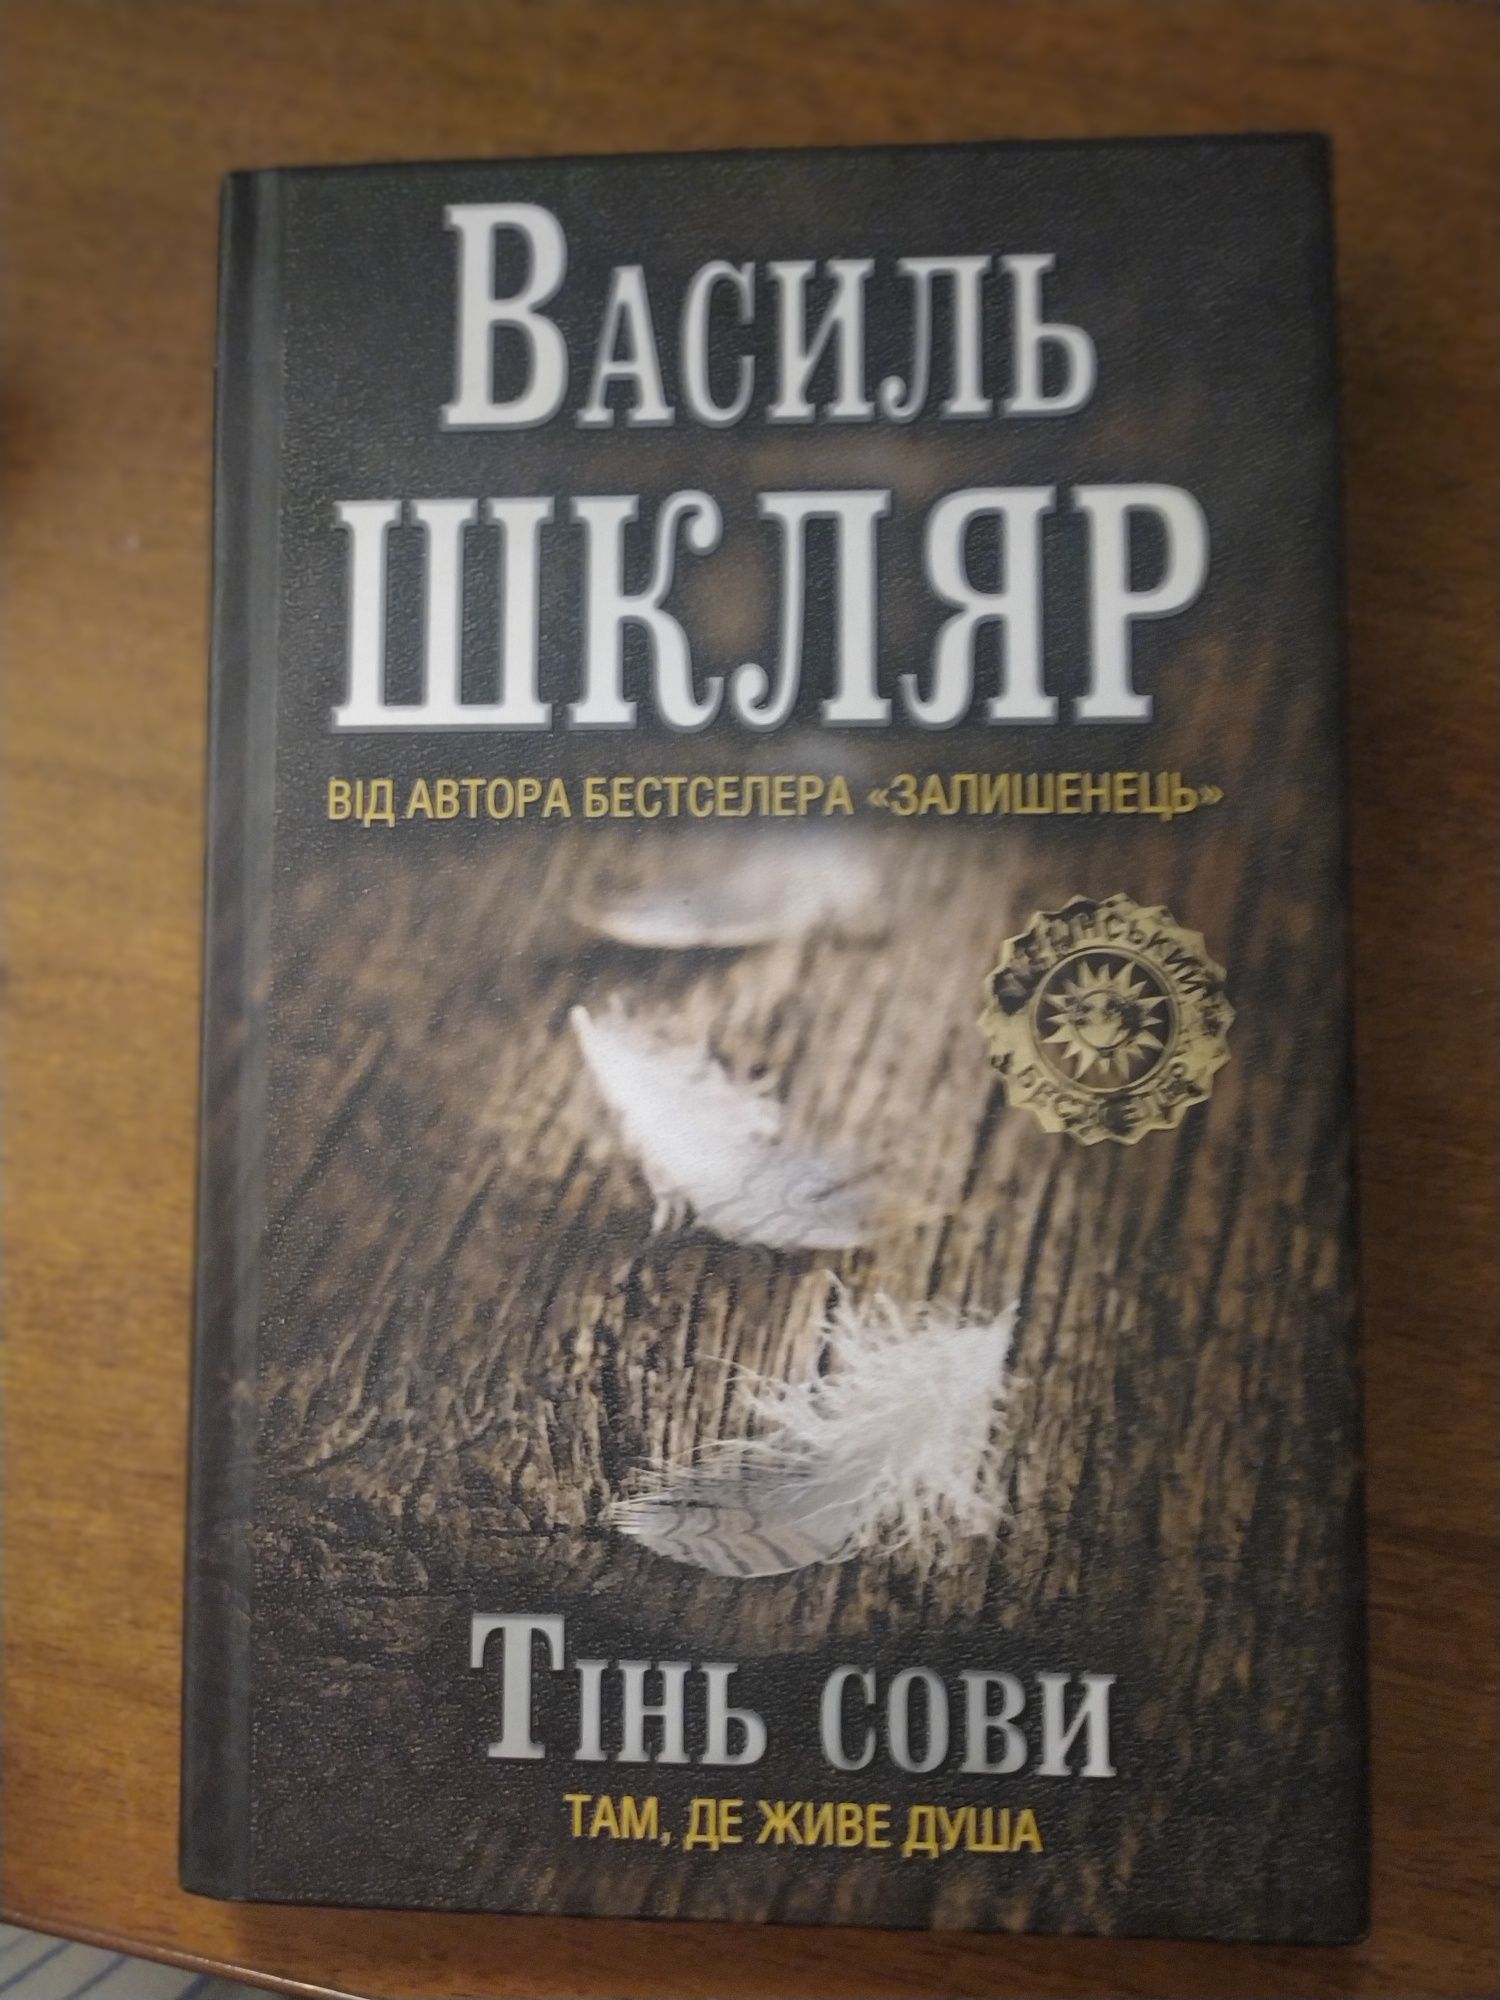 Книга "Тінь сови" Василя Шкляра